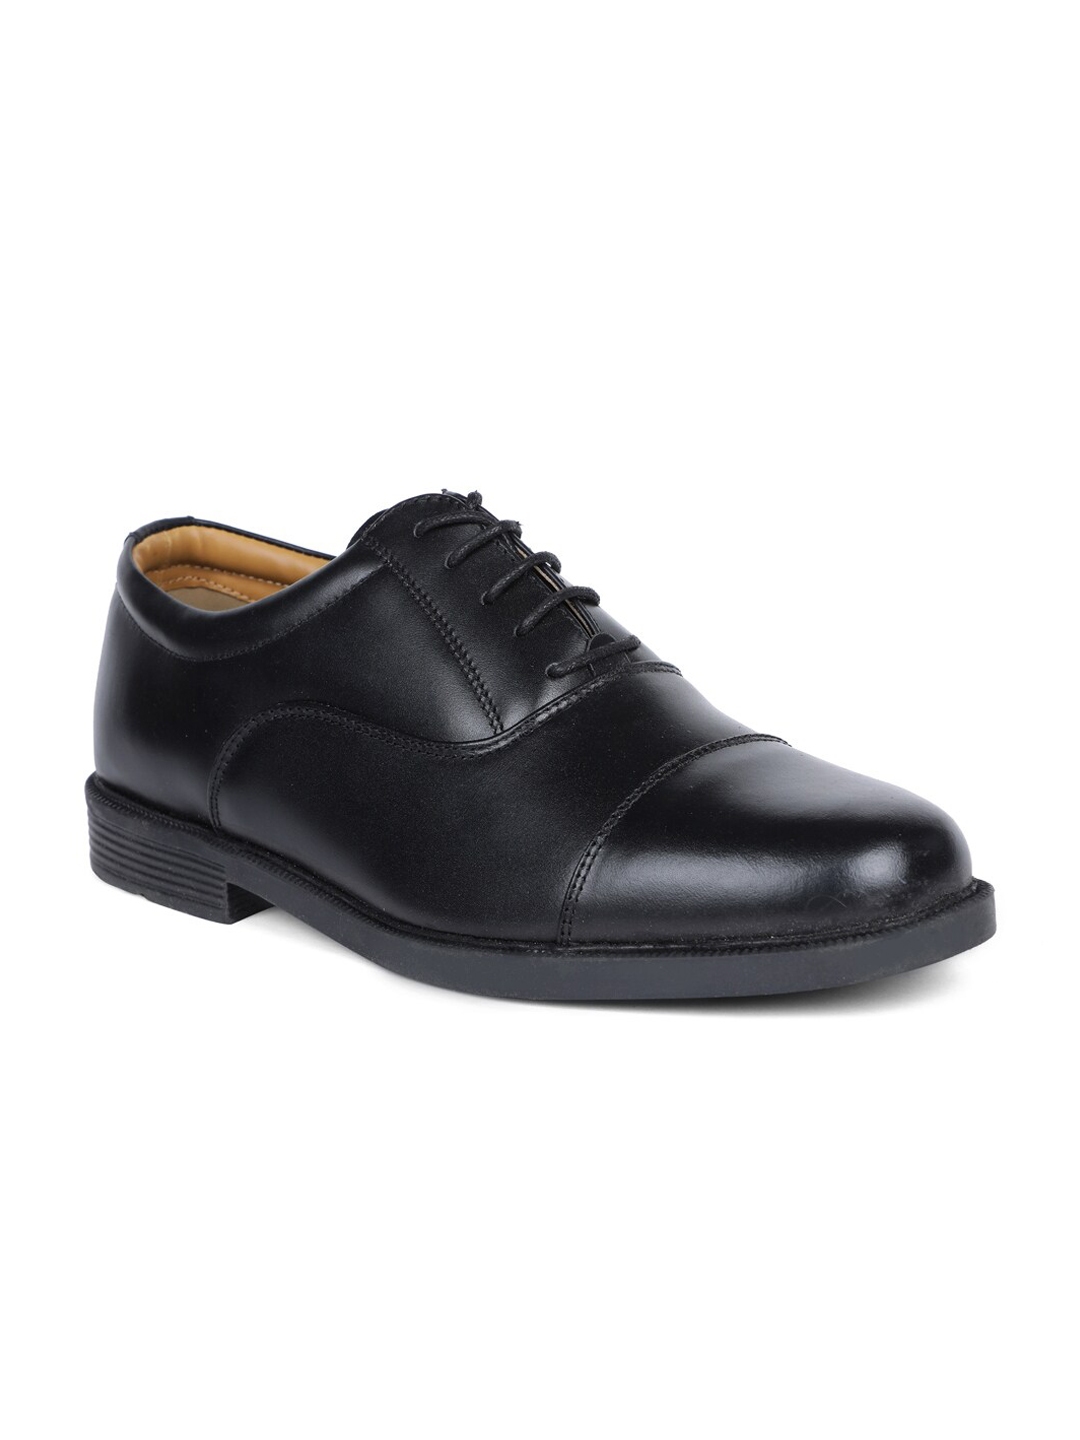 Buy Bata Men Black Solid Oxford Shoes - Formal Shoes for Men 16576662 ...